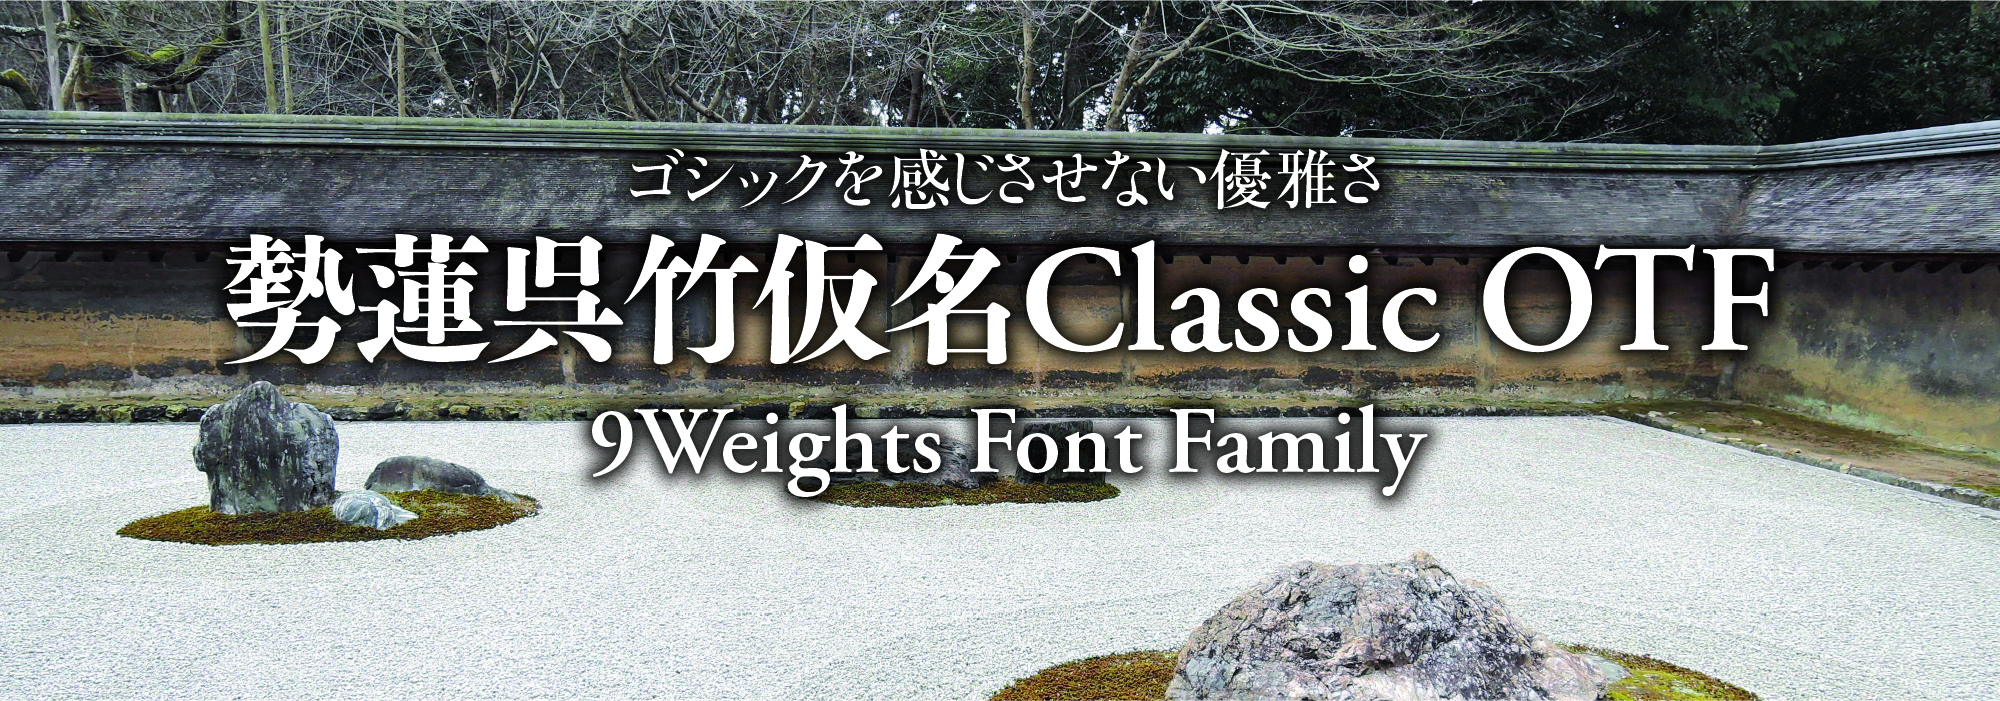 ゴシックを感じさせない優雅さ 勢蓮呉竹仮名Classic 9 Weights Font Family